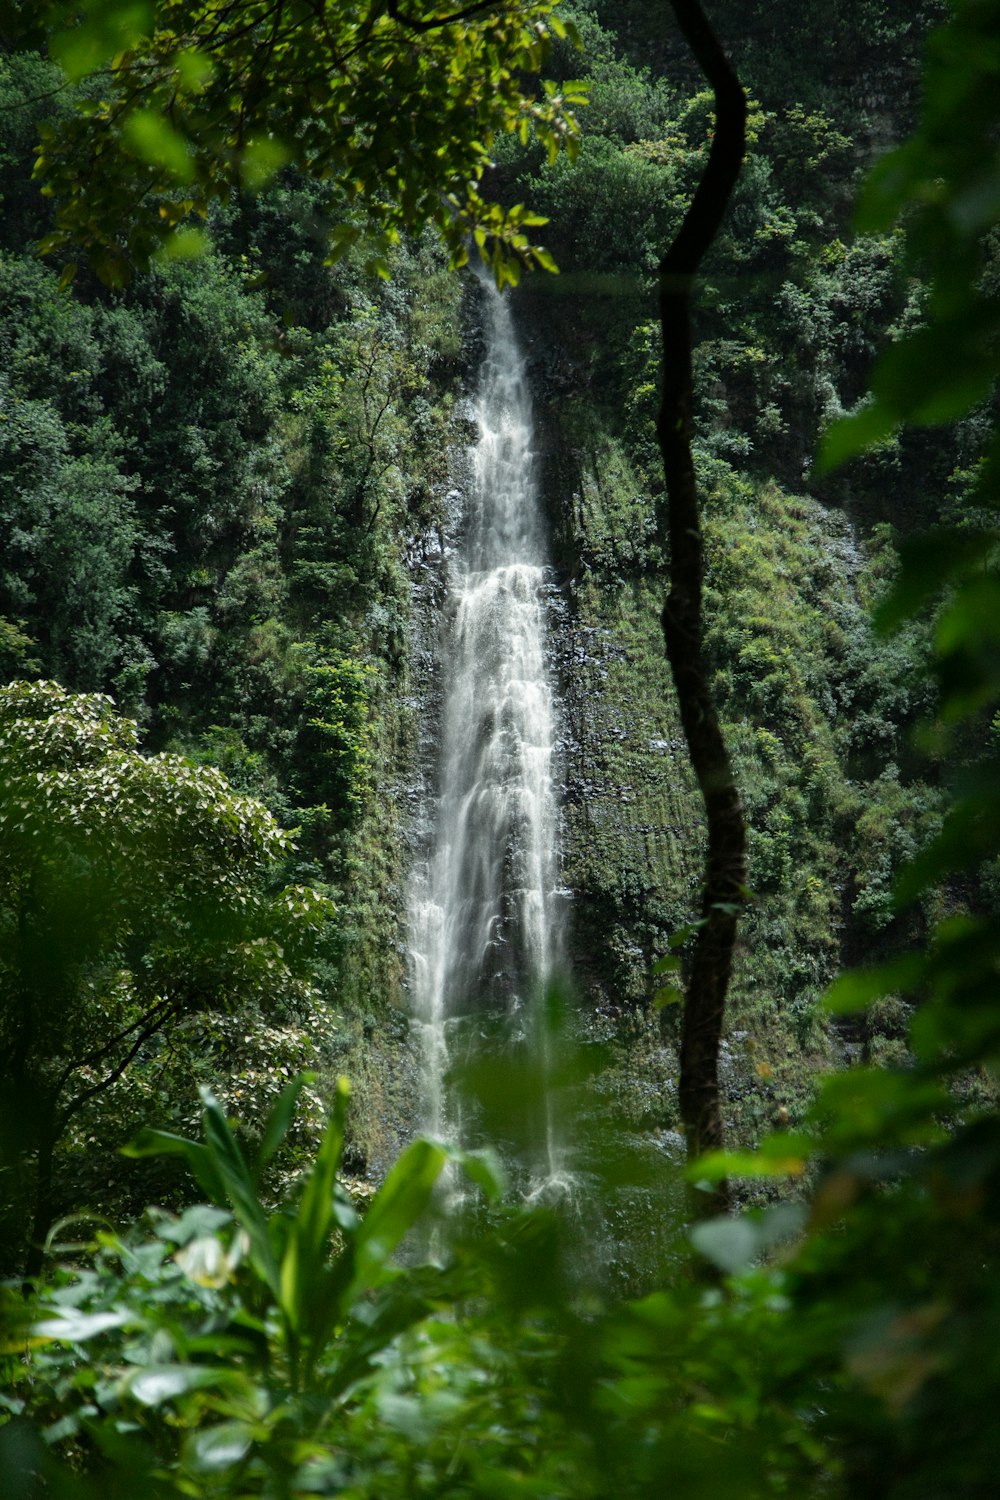 waterfalls near trees during daytime